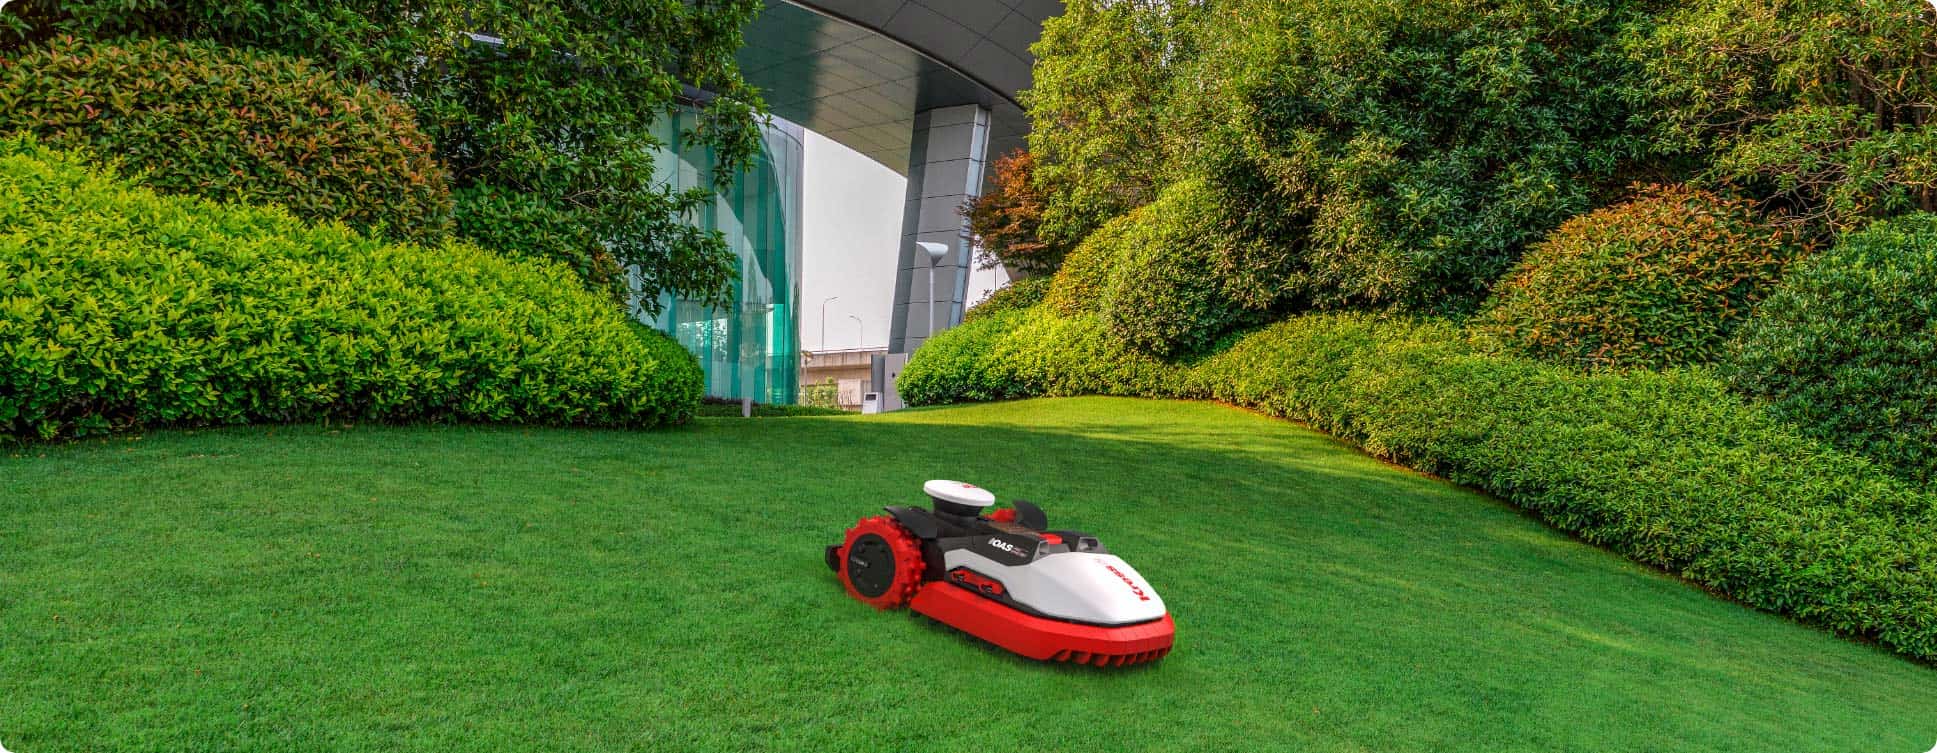 kress robot mower business solution mows a field